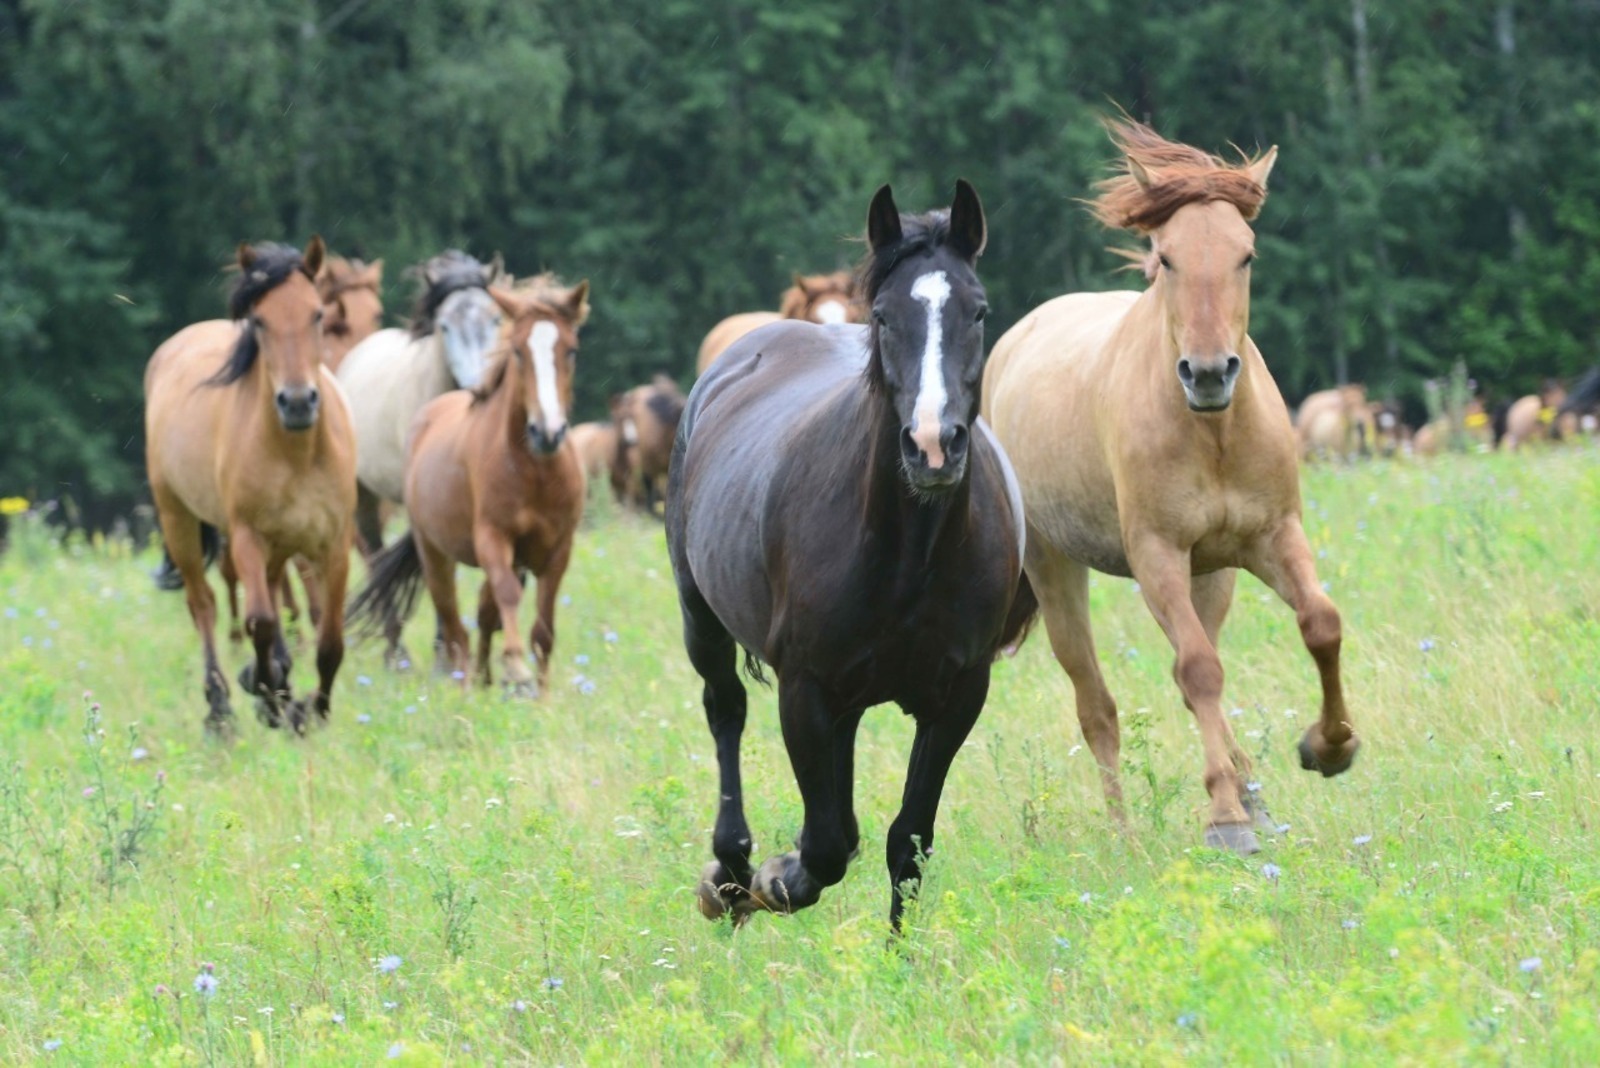 В Башкортостане стартовал фестиваль лошадей башкирской породы «Башҡорт аты» («Башкирская лошадь»)